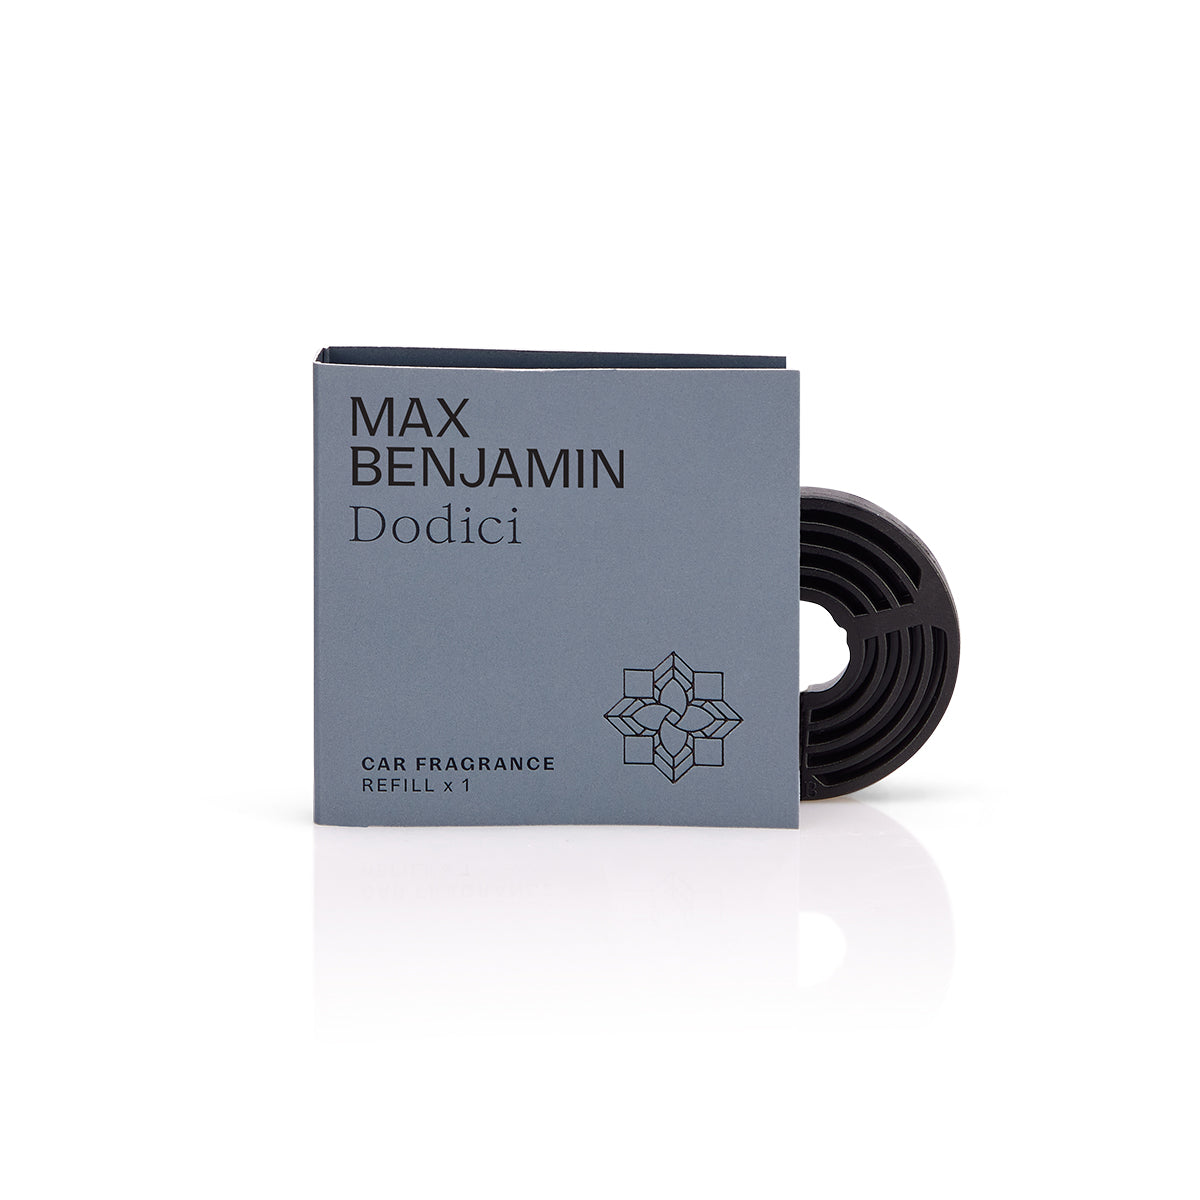 Dodici Refill for Car Fragrance - Max Benjamin